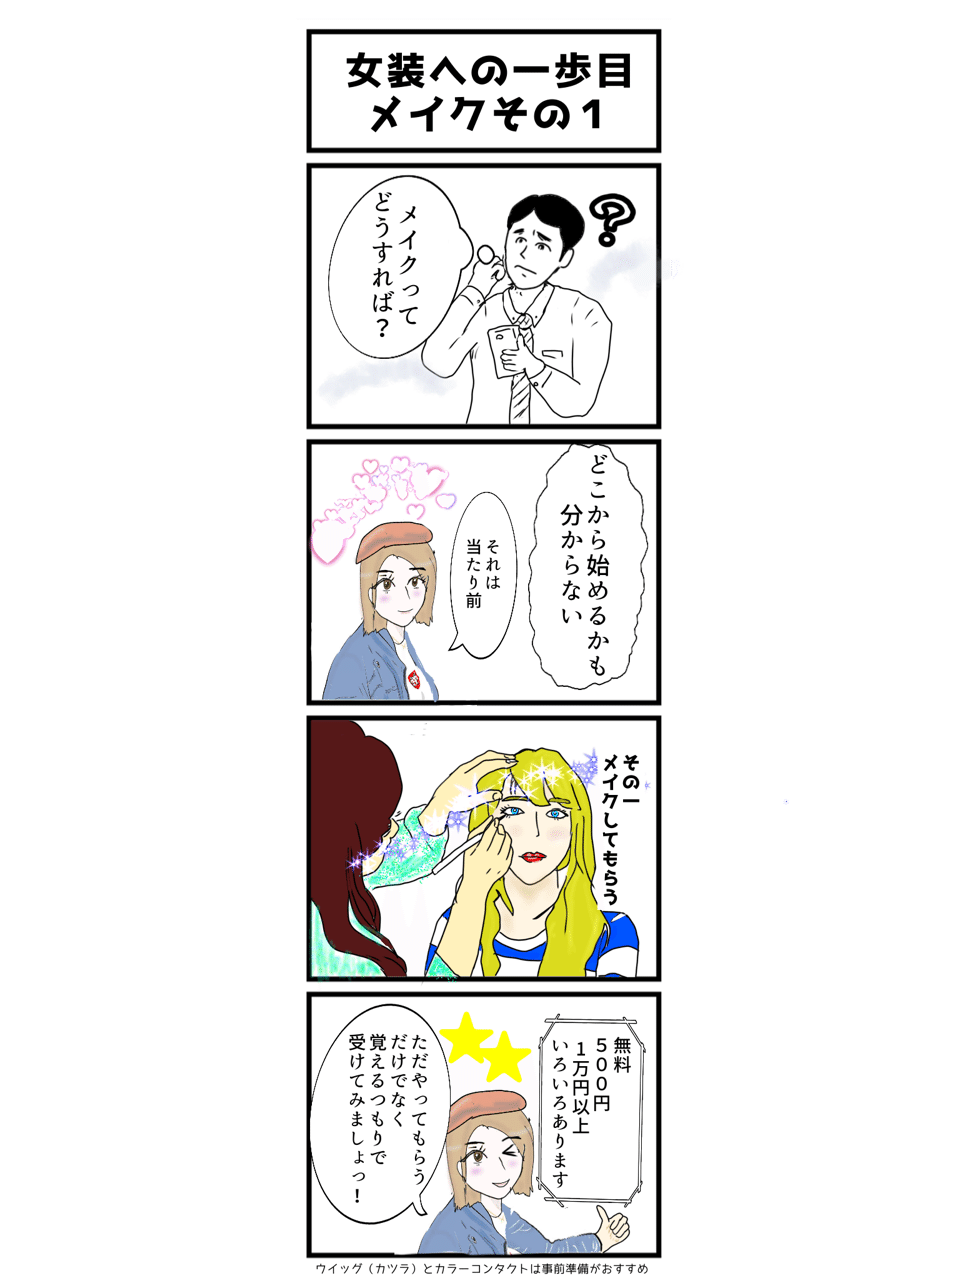 ４コマ漫画で女装メイクの第一歩 女装家 尾張姫恵美 Note